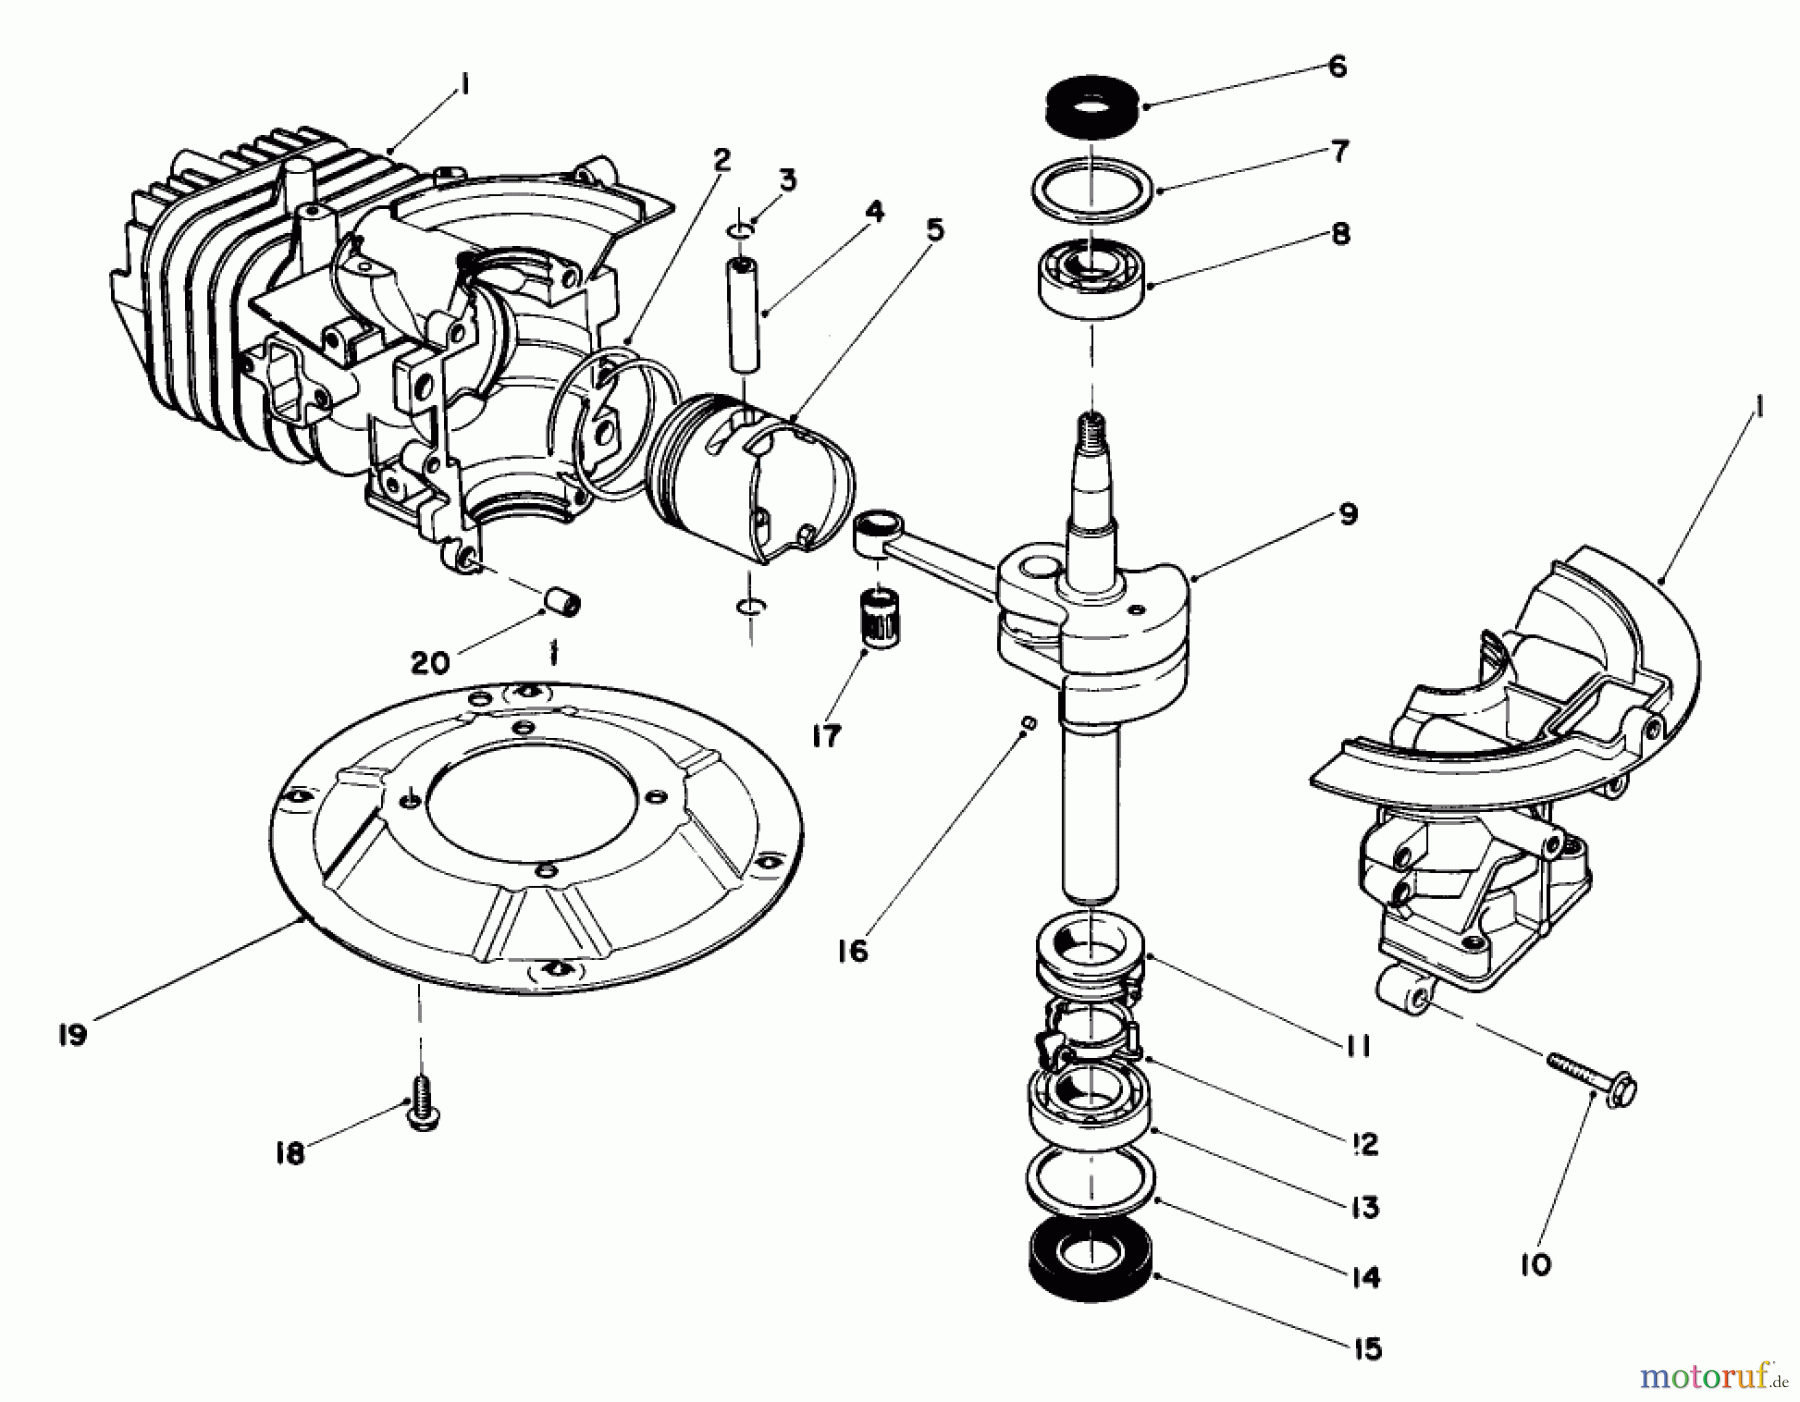  Toro Neu Mowers, Walk-Behind Seite 2 22030 - Toro Lawnmower, 1987 (7000001-7999999) ENGINE ASSEMBLY MODEL NO. 47PG6 #1